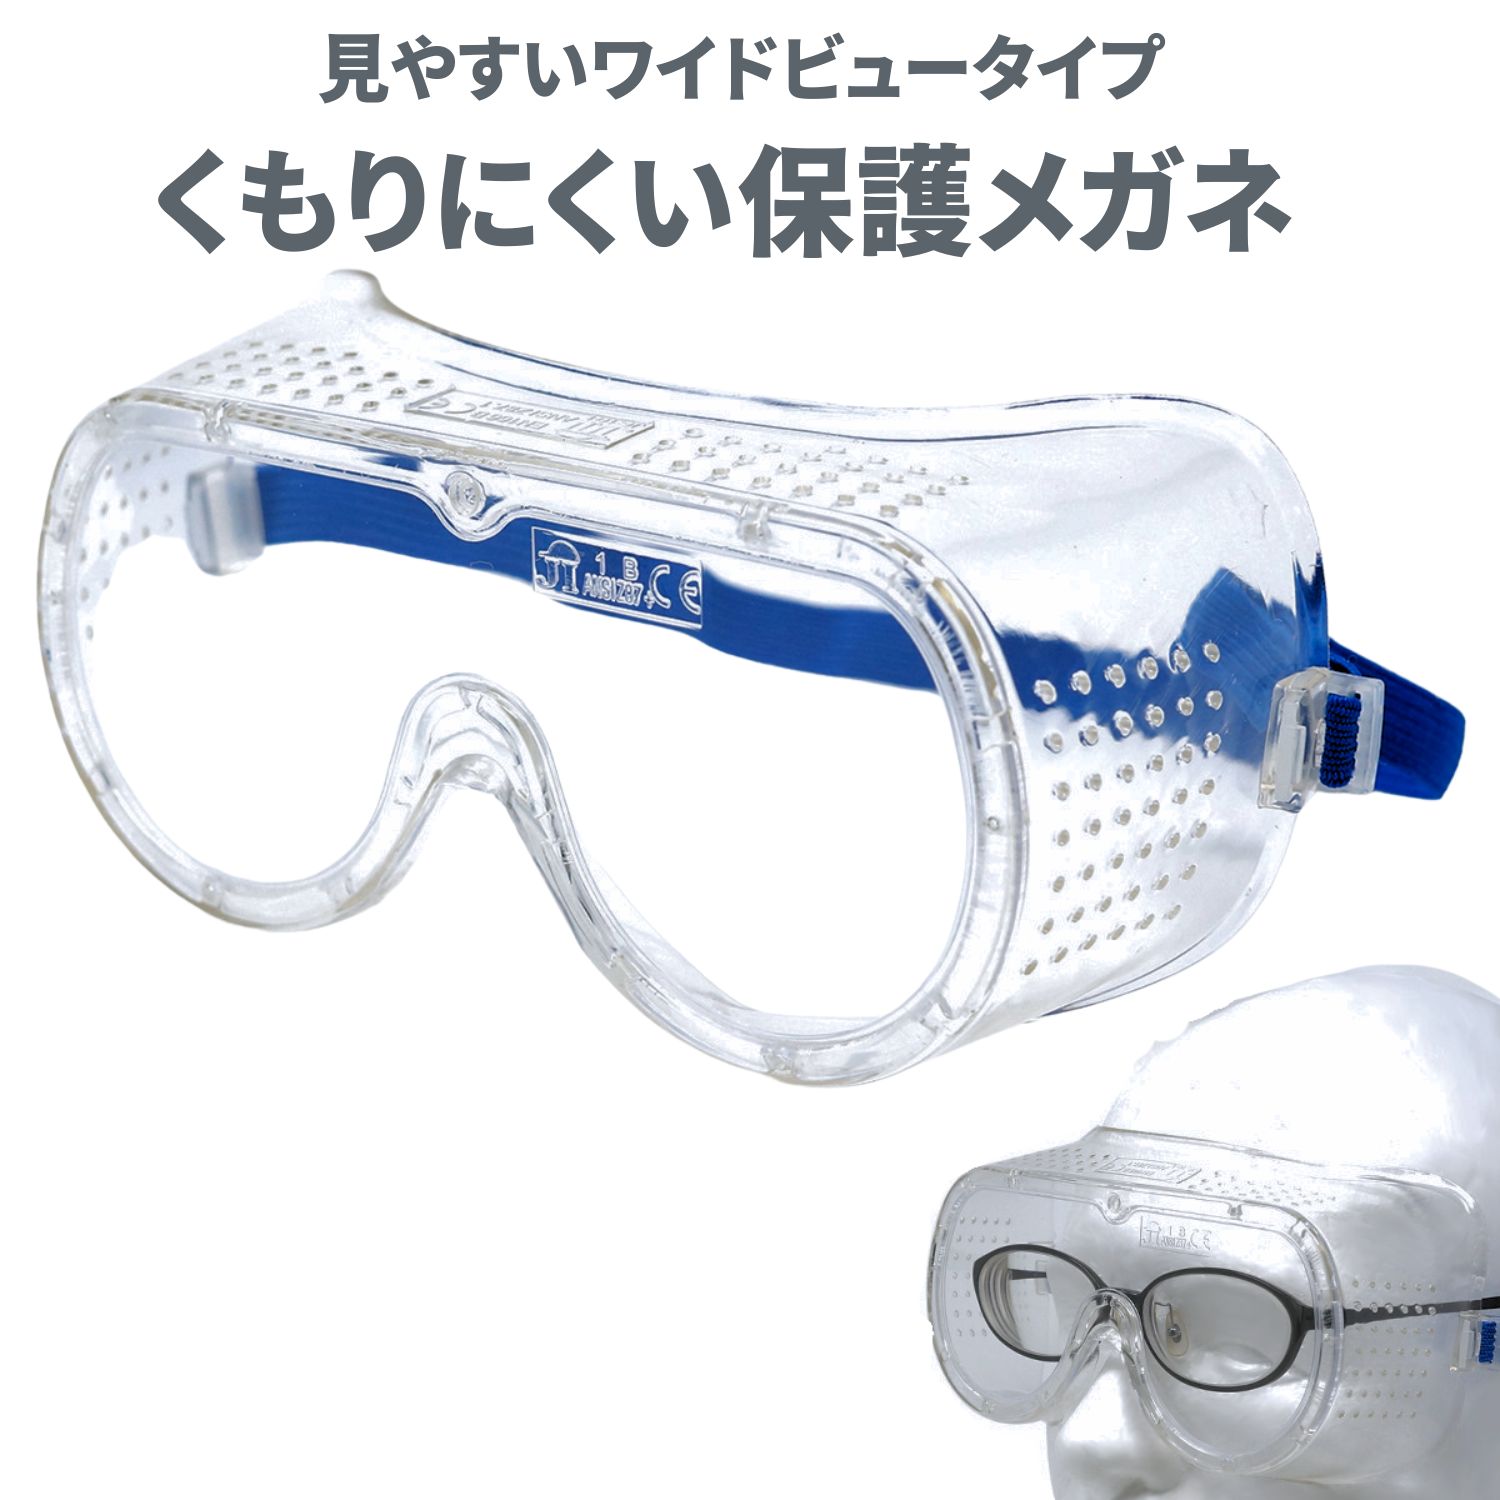 ポイントアップ中！ 医療用 くもらない ゴーグル 保護メガネ 眼鏡の上から使える セフティグラス オーバーグラス tkh